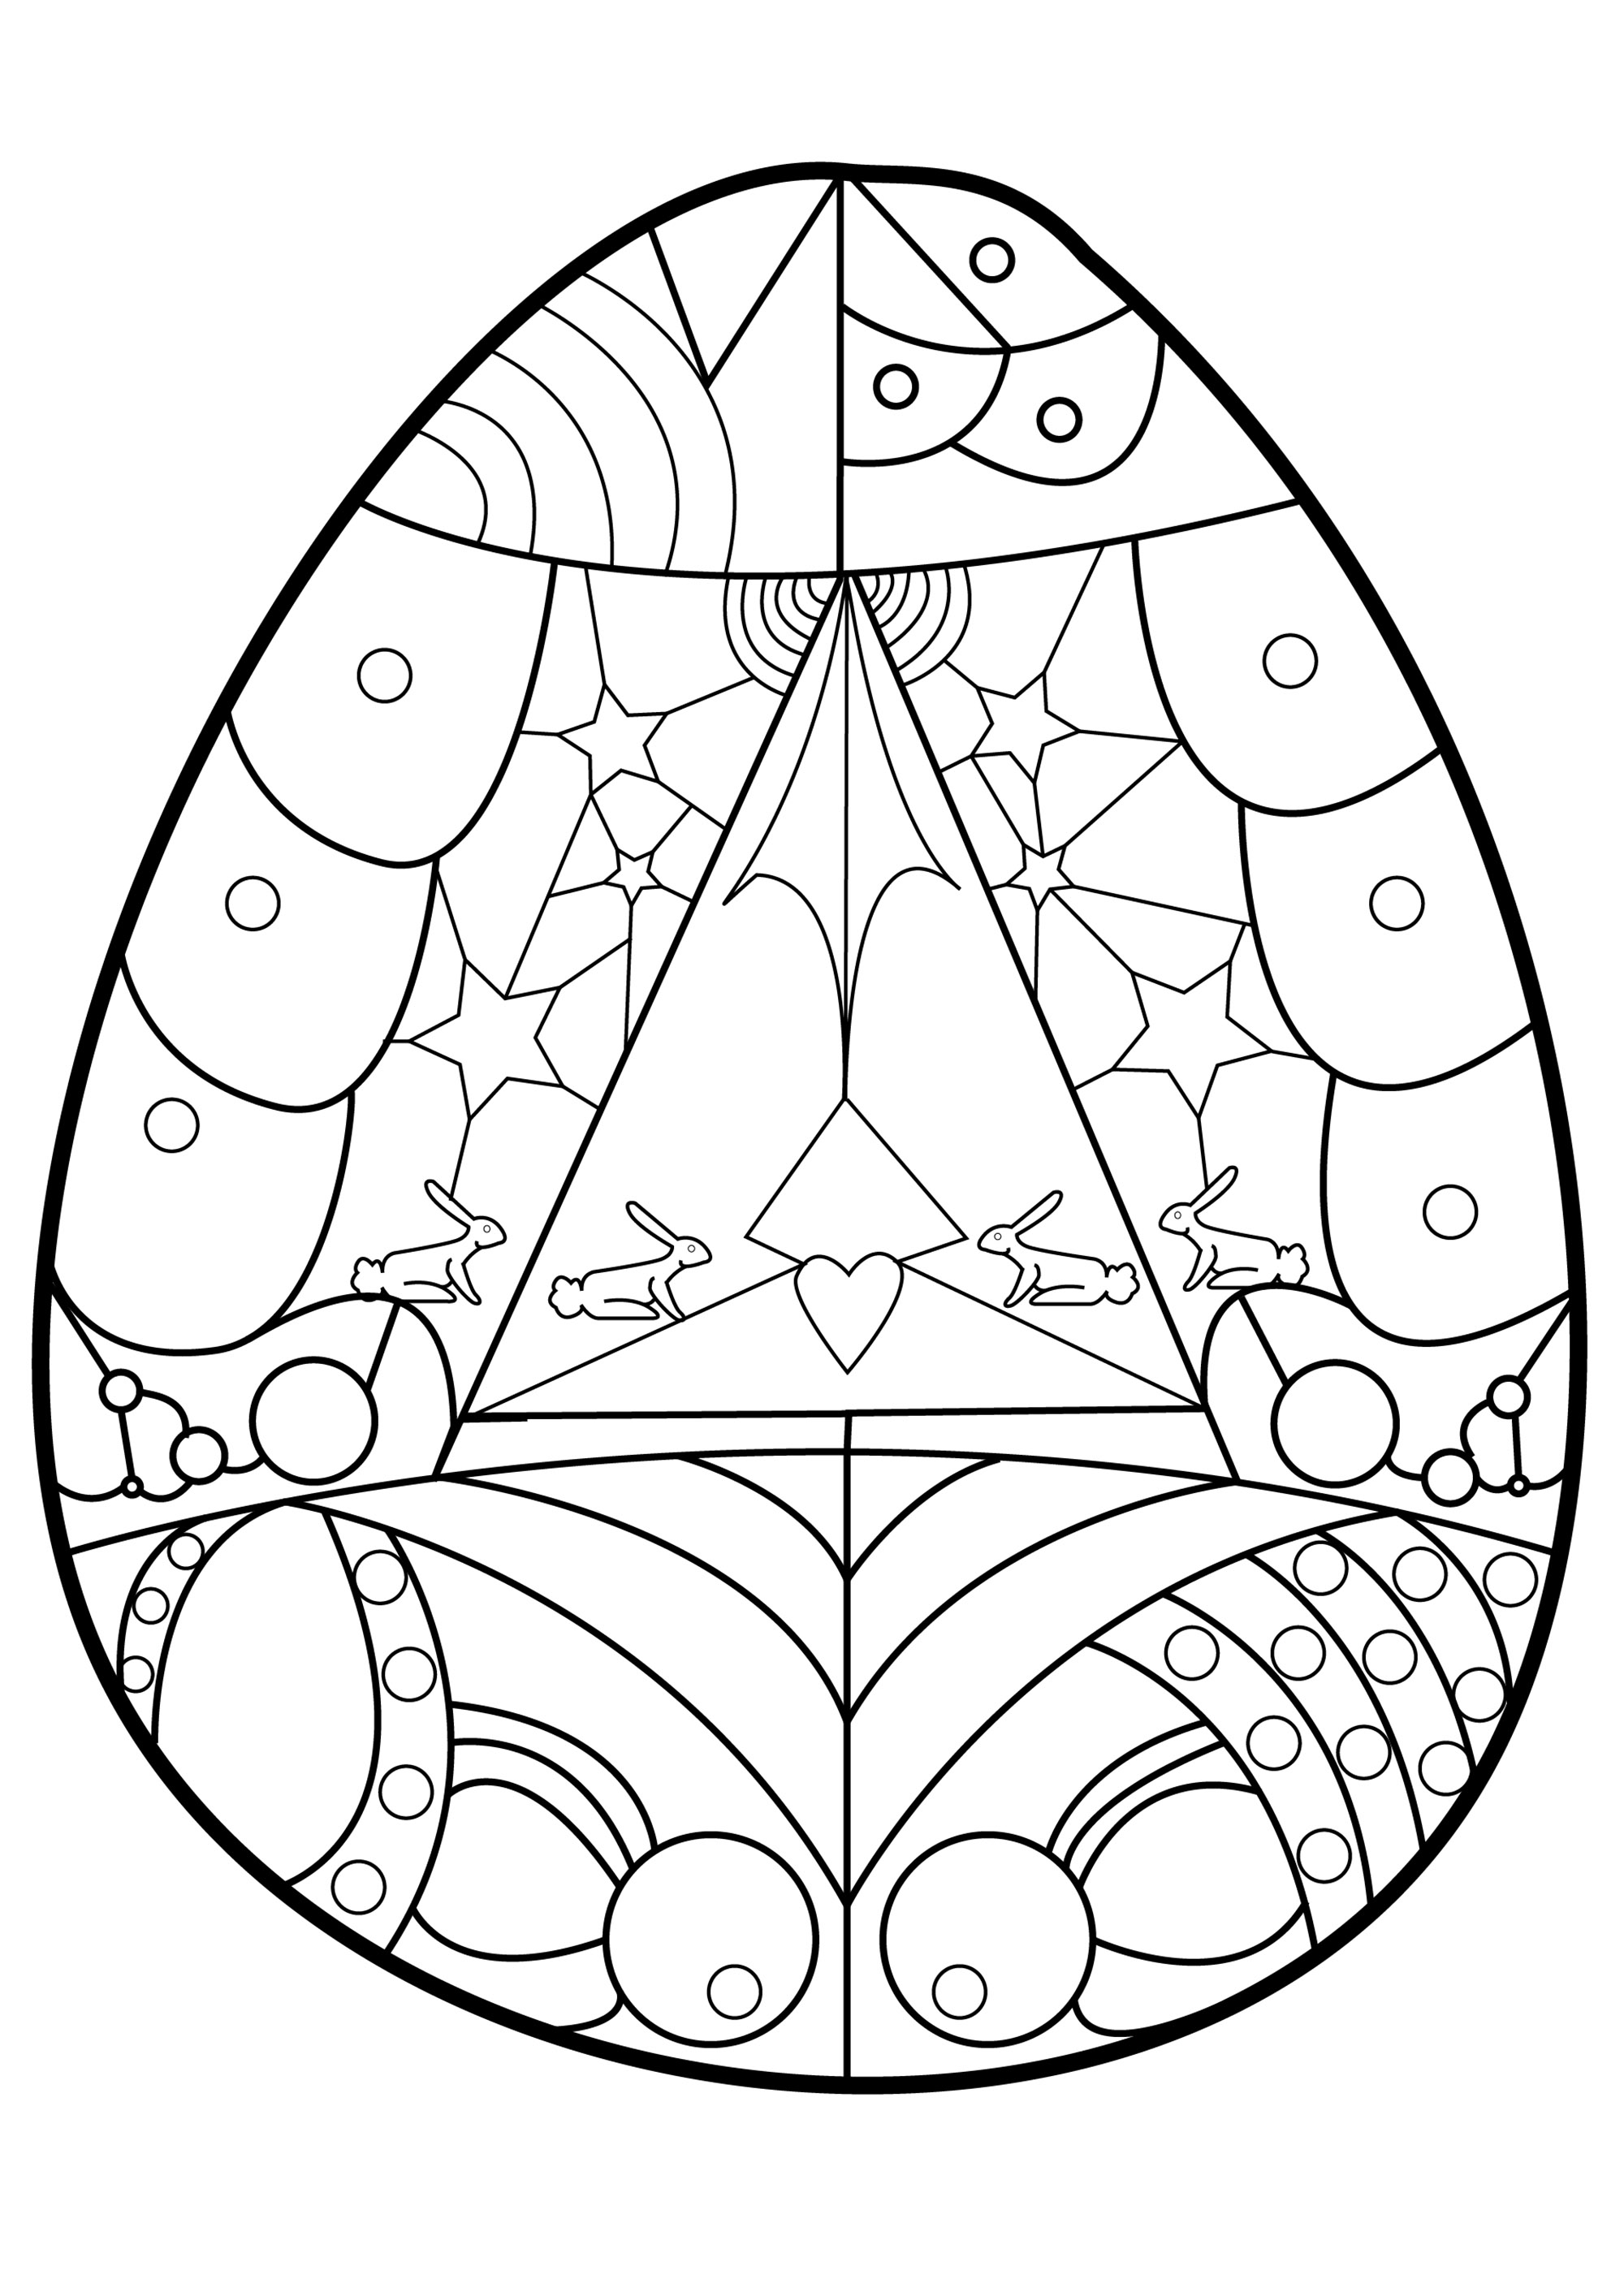 Huevo de pascua con formas geomãtricas